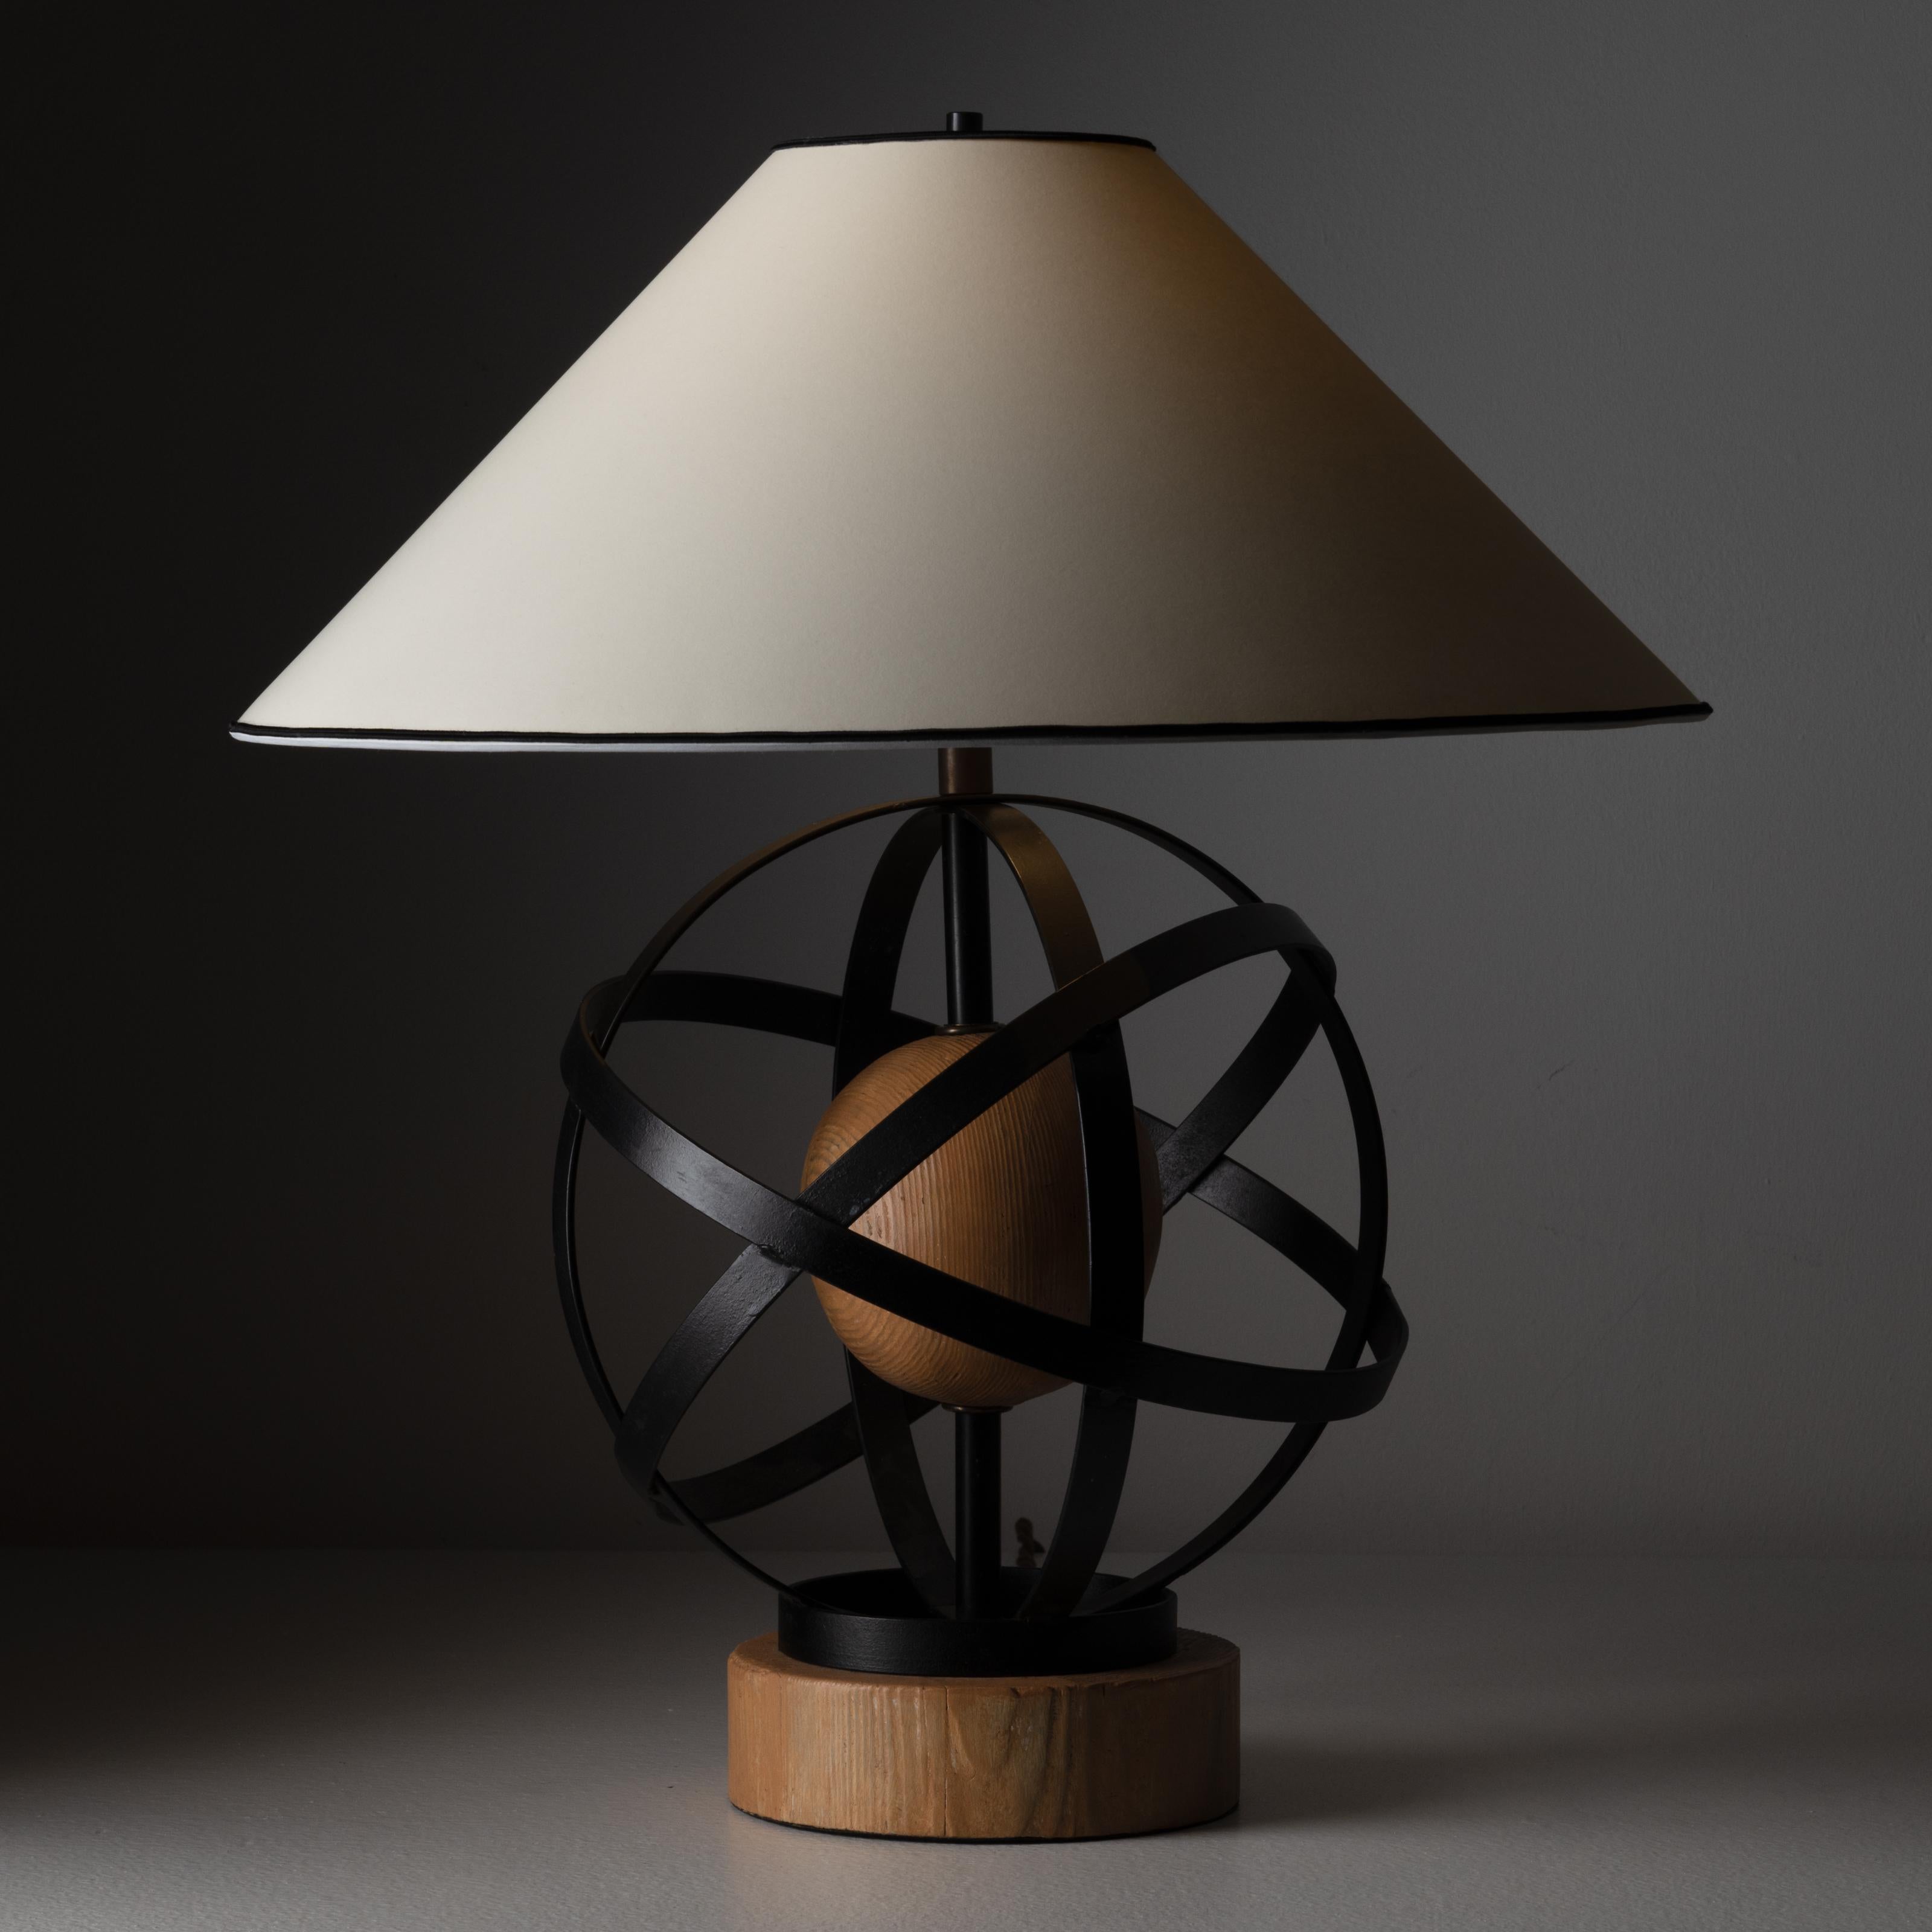 Lampe à poser par Heifetz. Conçu et fabriqué aux États-Unis, vers 1950. Lampe de table en bois et fer, possédant une forme presque moléculaire de fer enveloppé, avec une base solide en bois. L'abat-jour est un lin blanc cassé nouvellement fabriqué